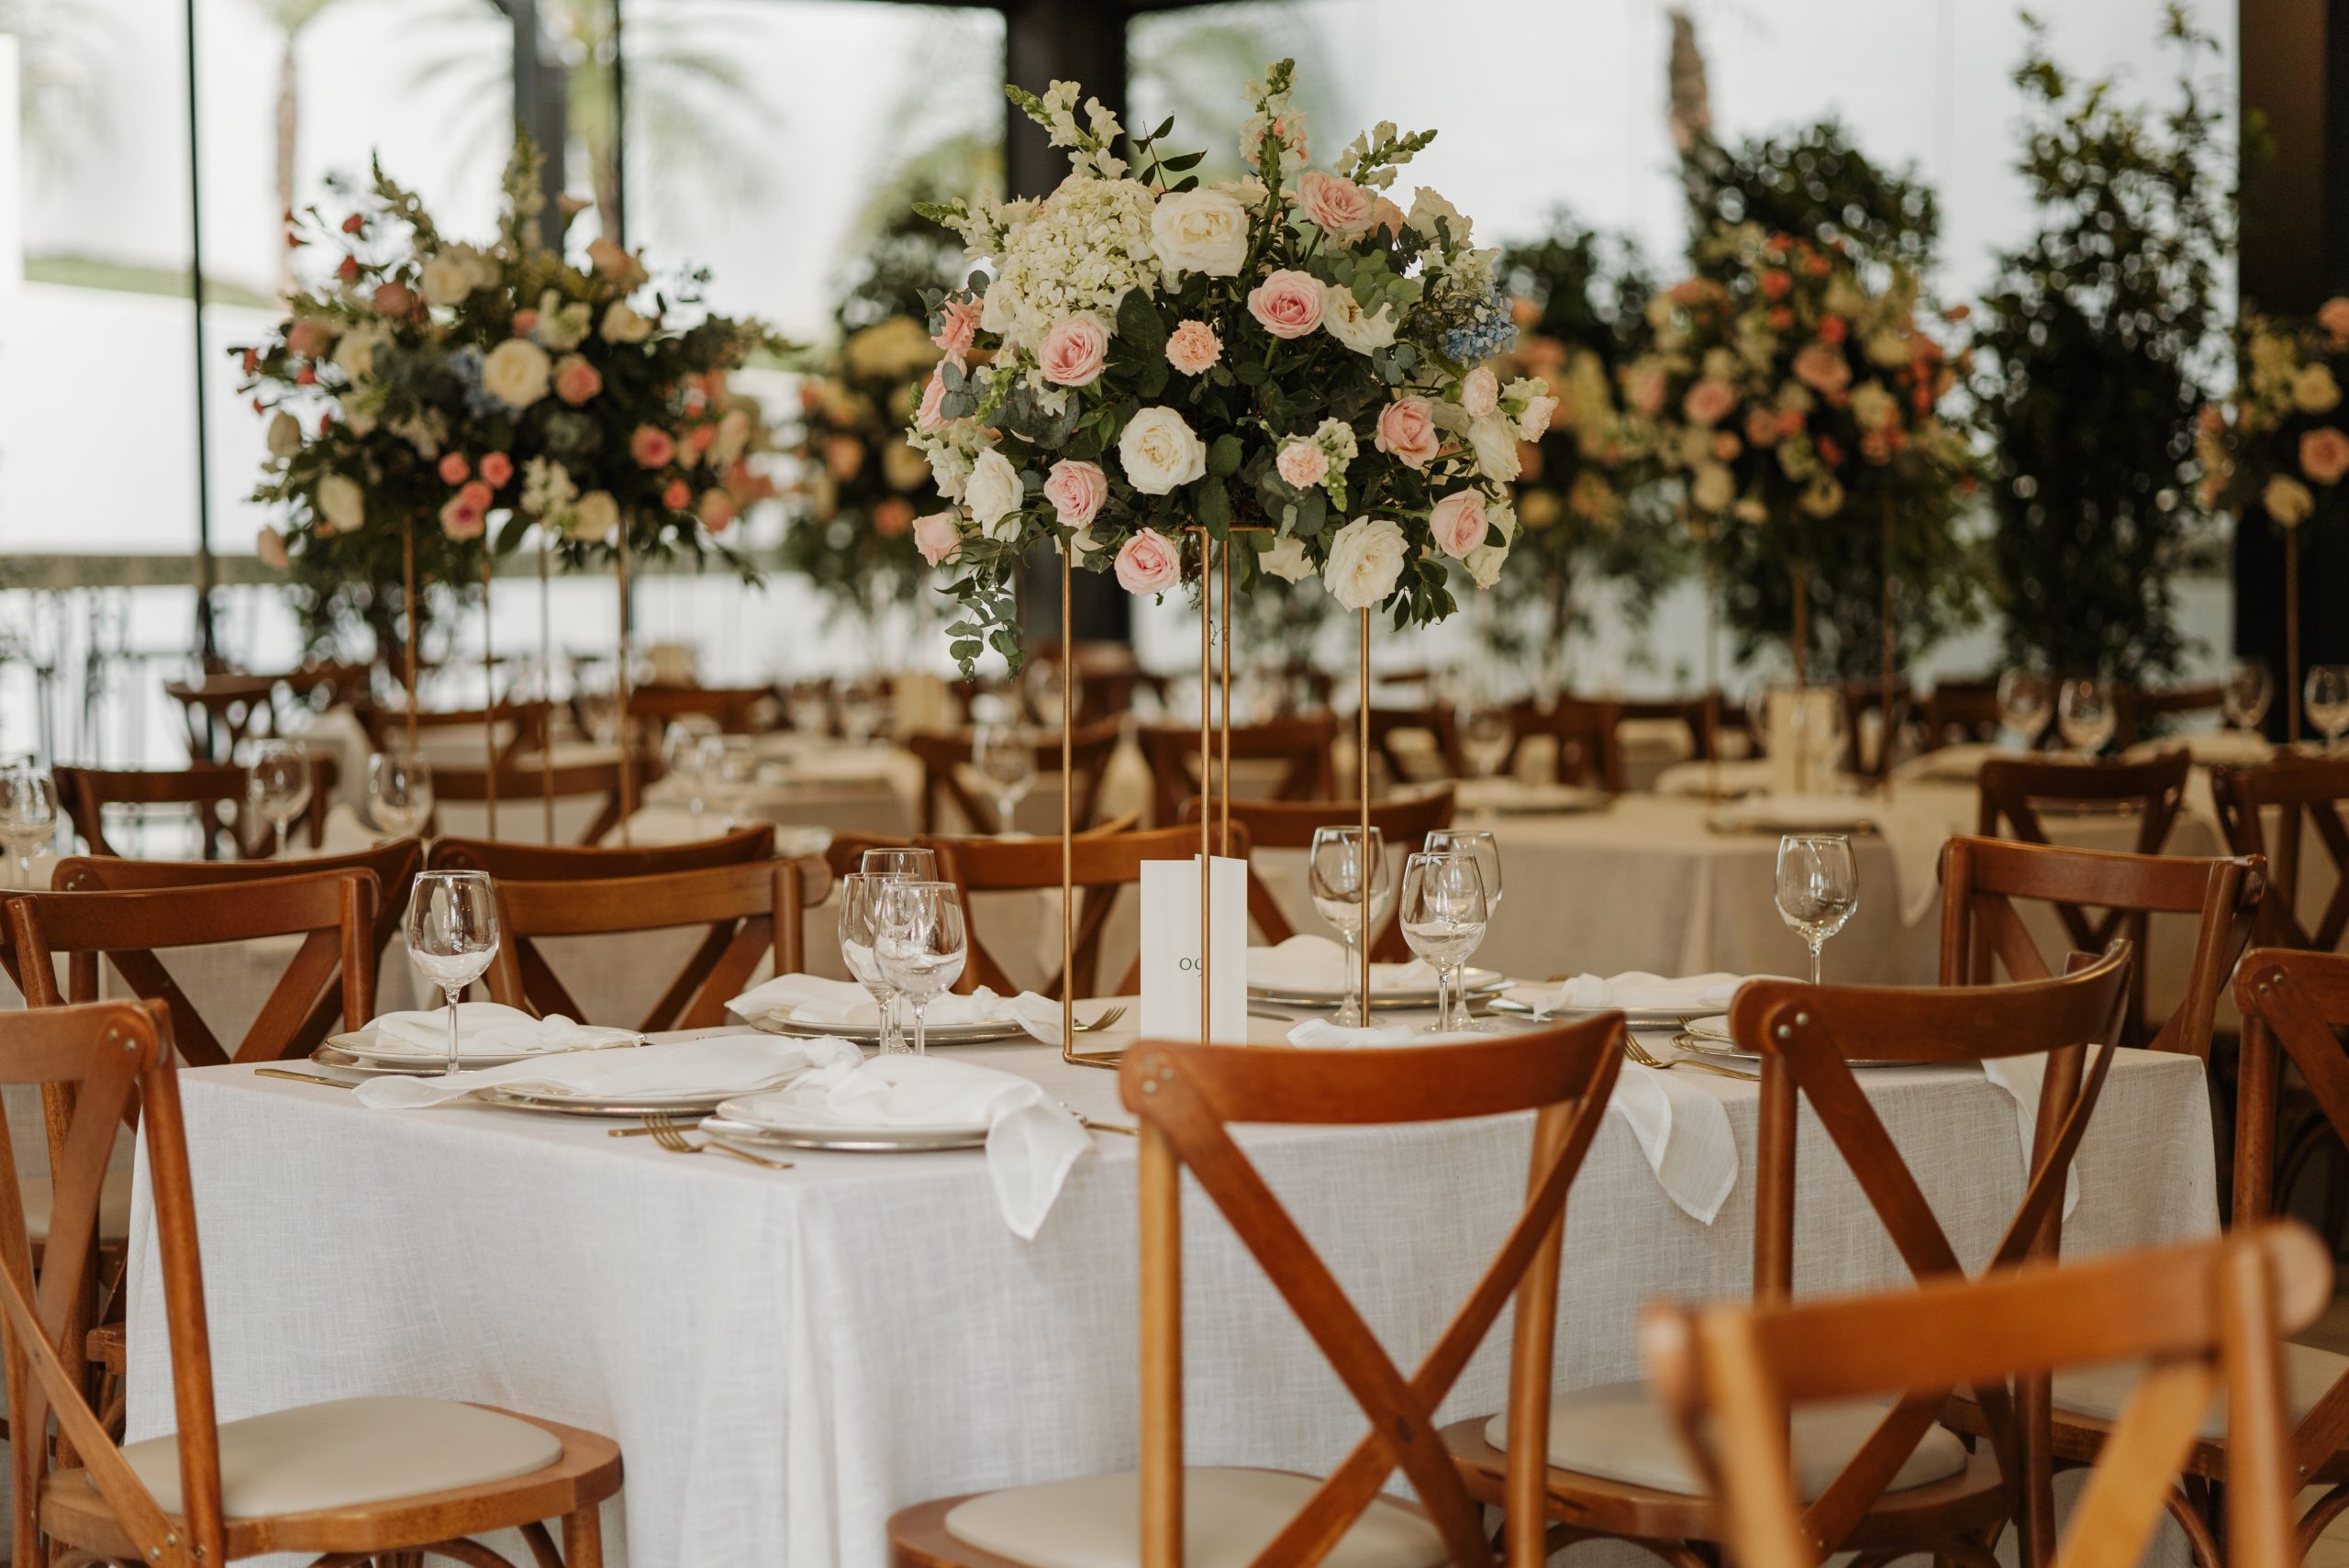 Recepção de convidados com elementos decorativos florais | Foto: Renata Guimarães Photos